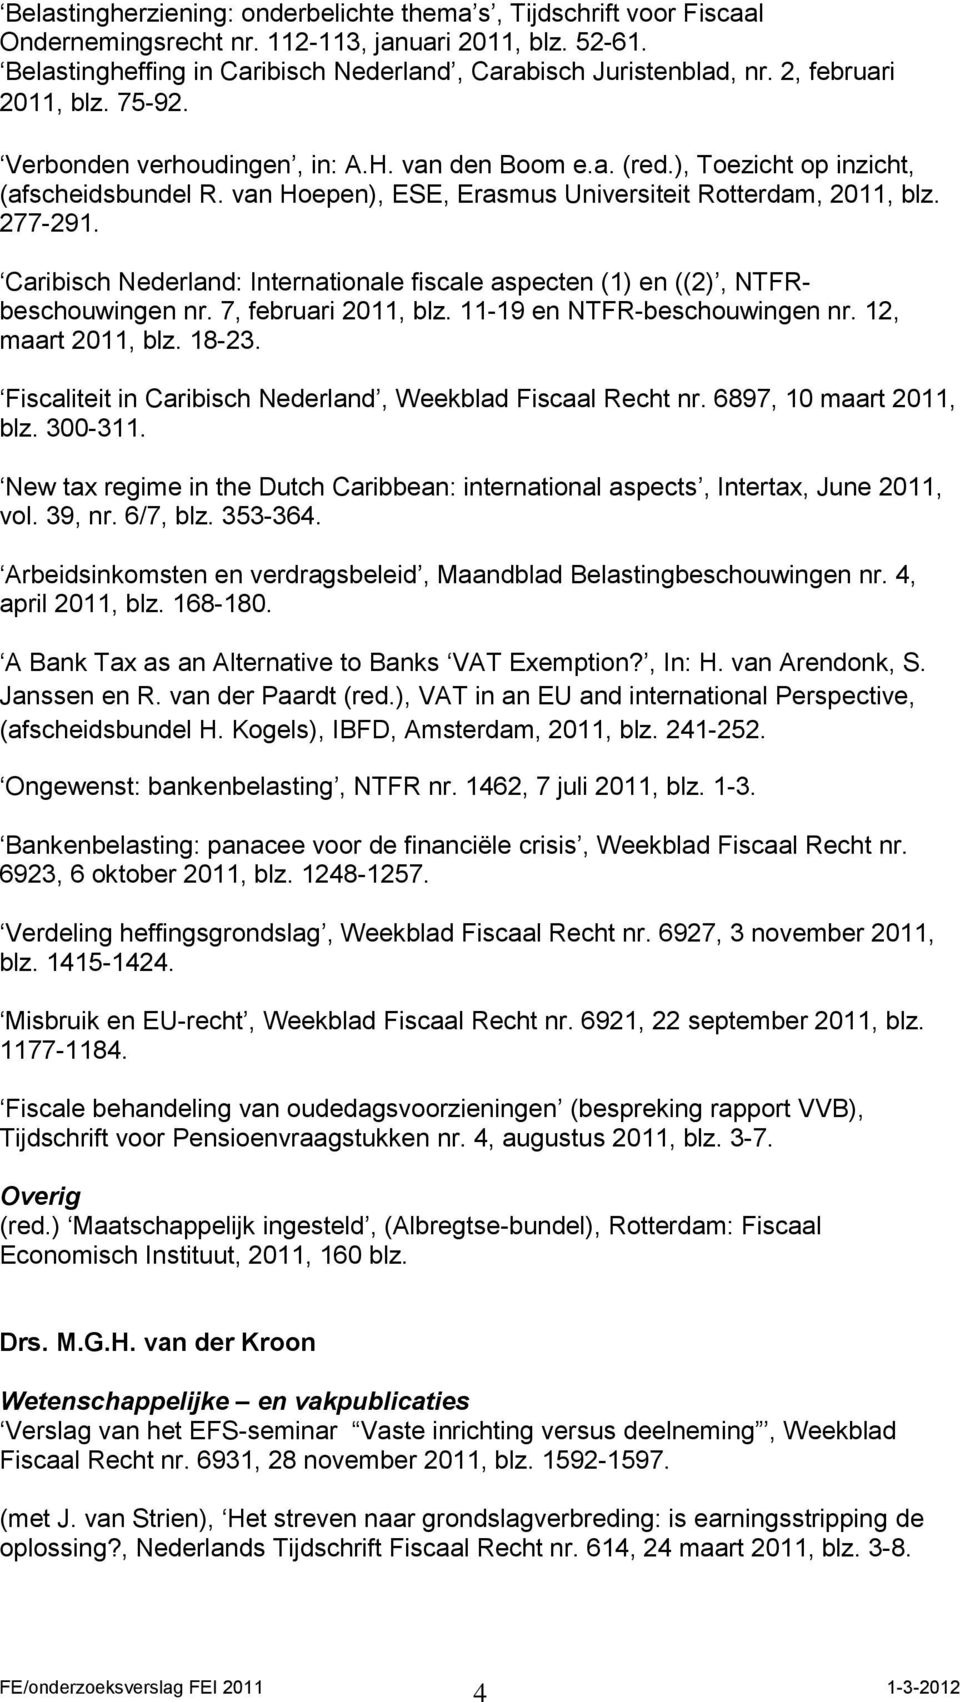 Caribisch Nederland: Internationale fiscale aspecten (1) en ((2), NTFRbeschouwingen nr. 7, februari 2011, blz. 11-19 en NTFR-beschouwingen nr. 12, maart 2011, blz. 18-23.